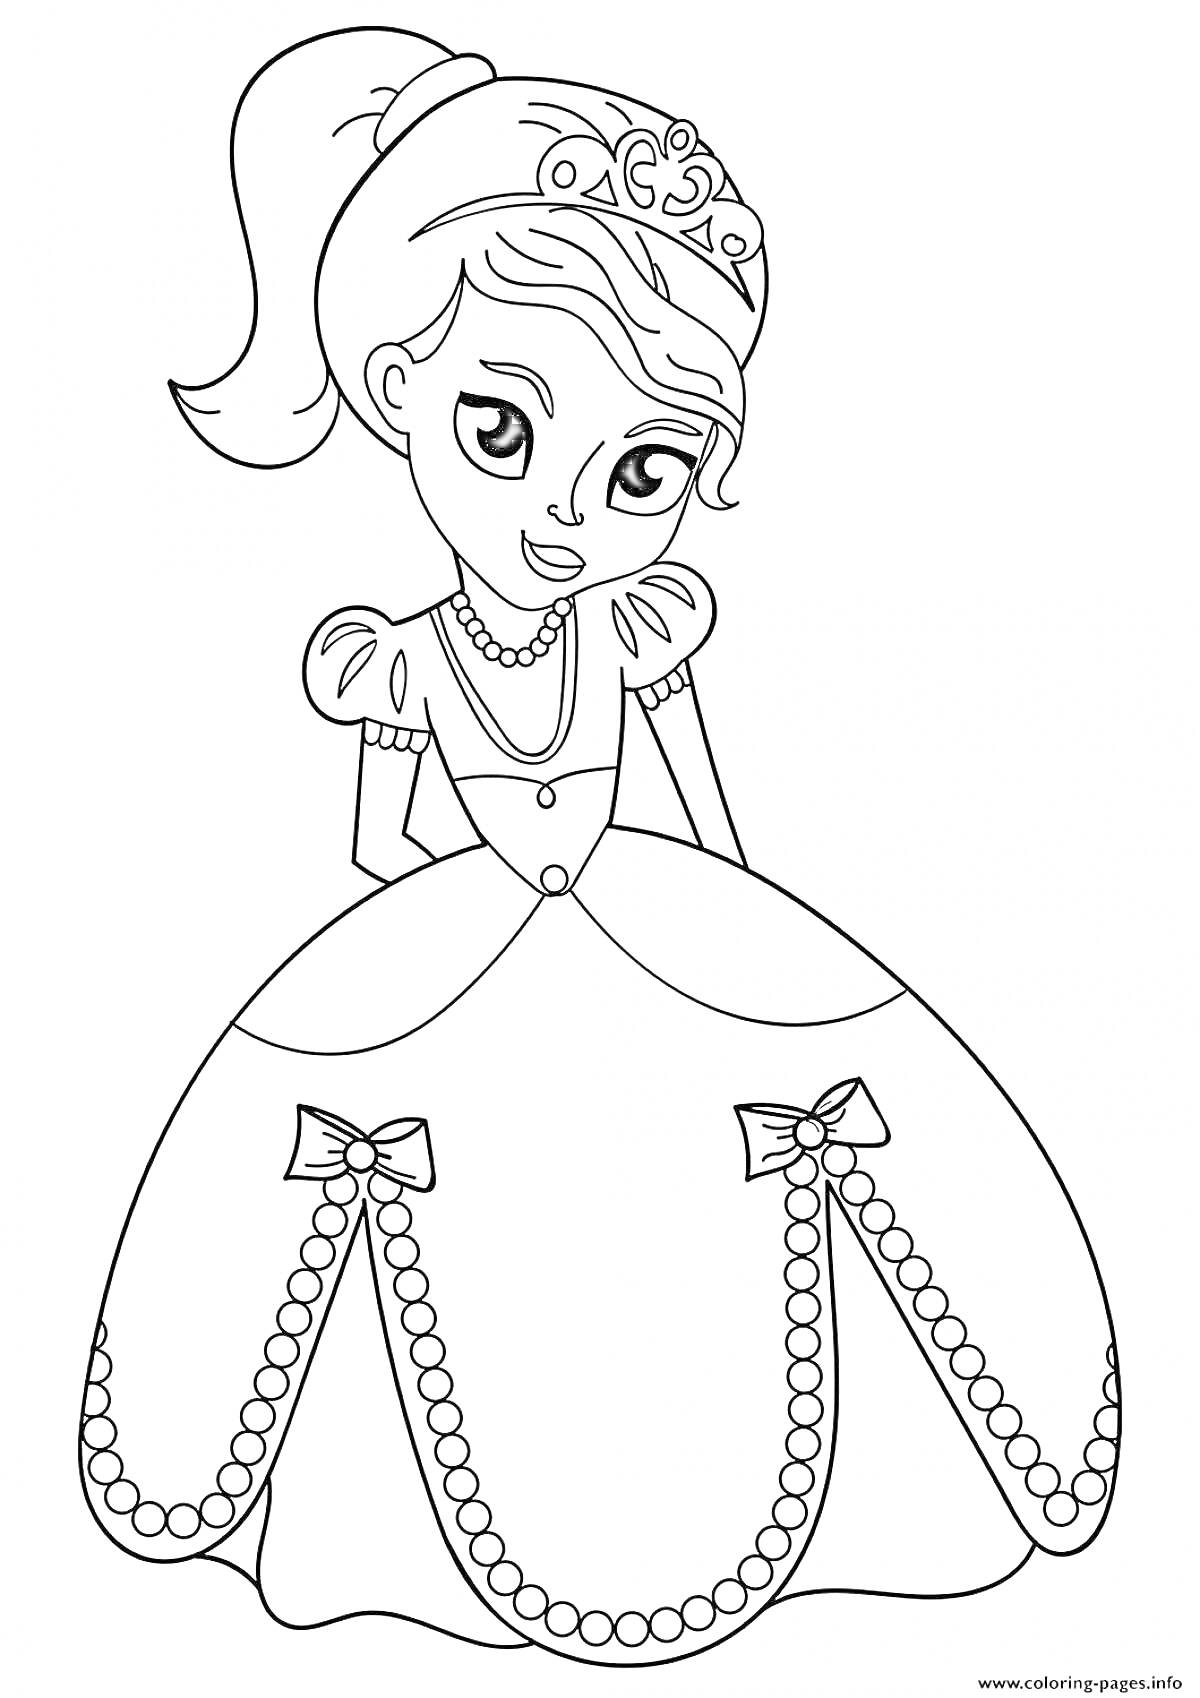 Раскраска Принцесса с ожерельем и диадемой